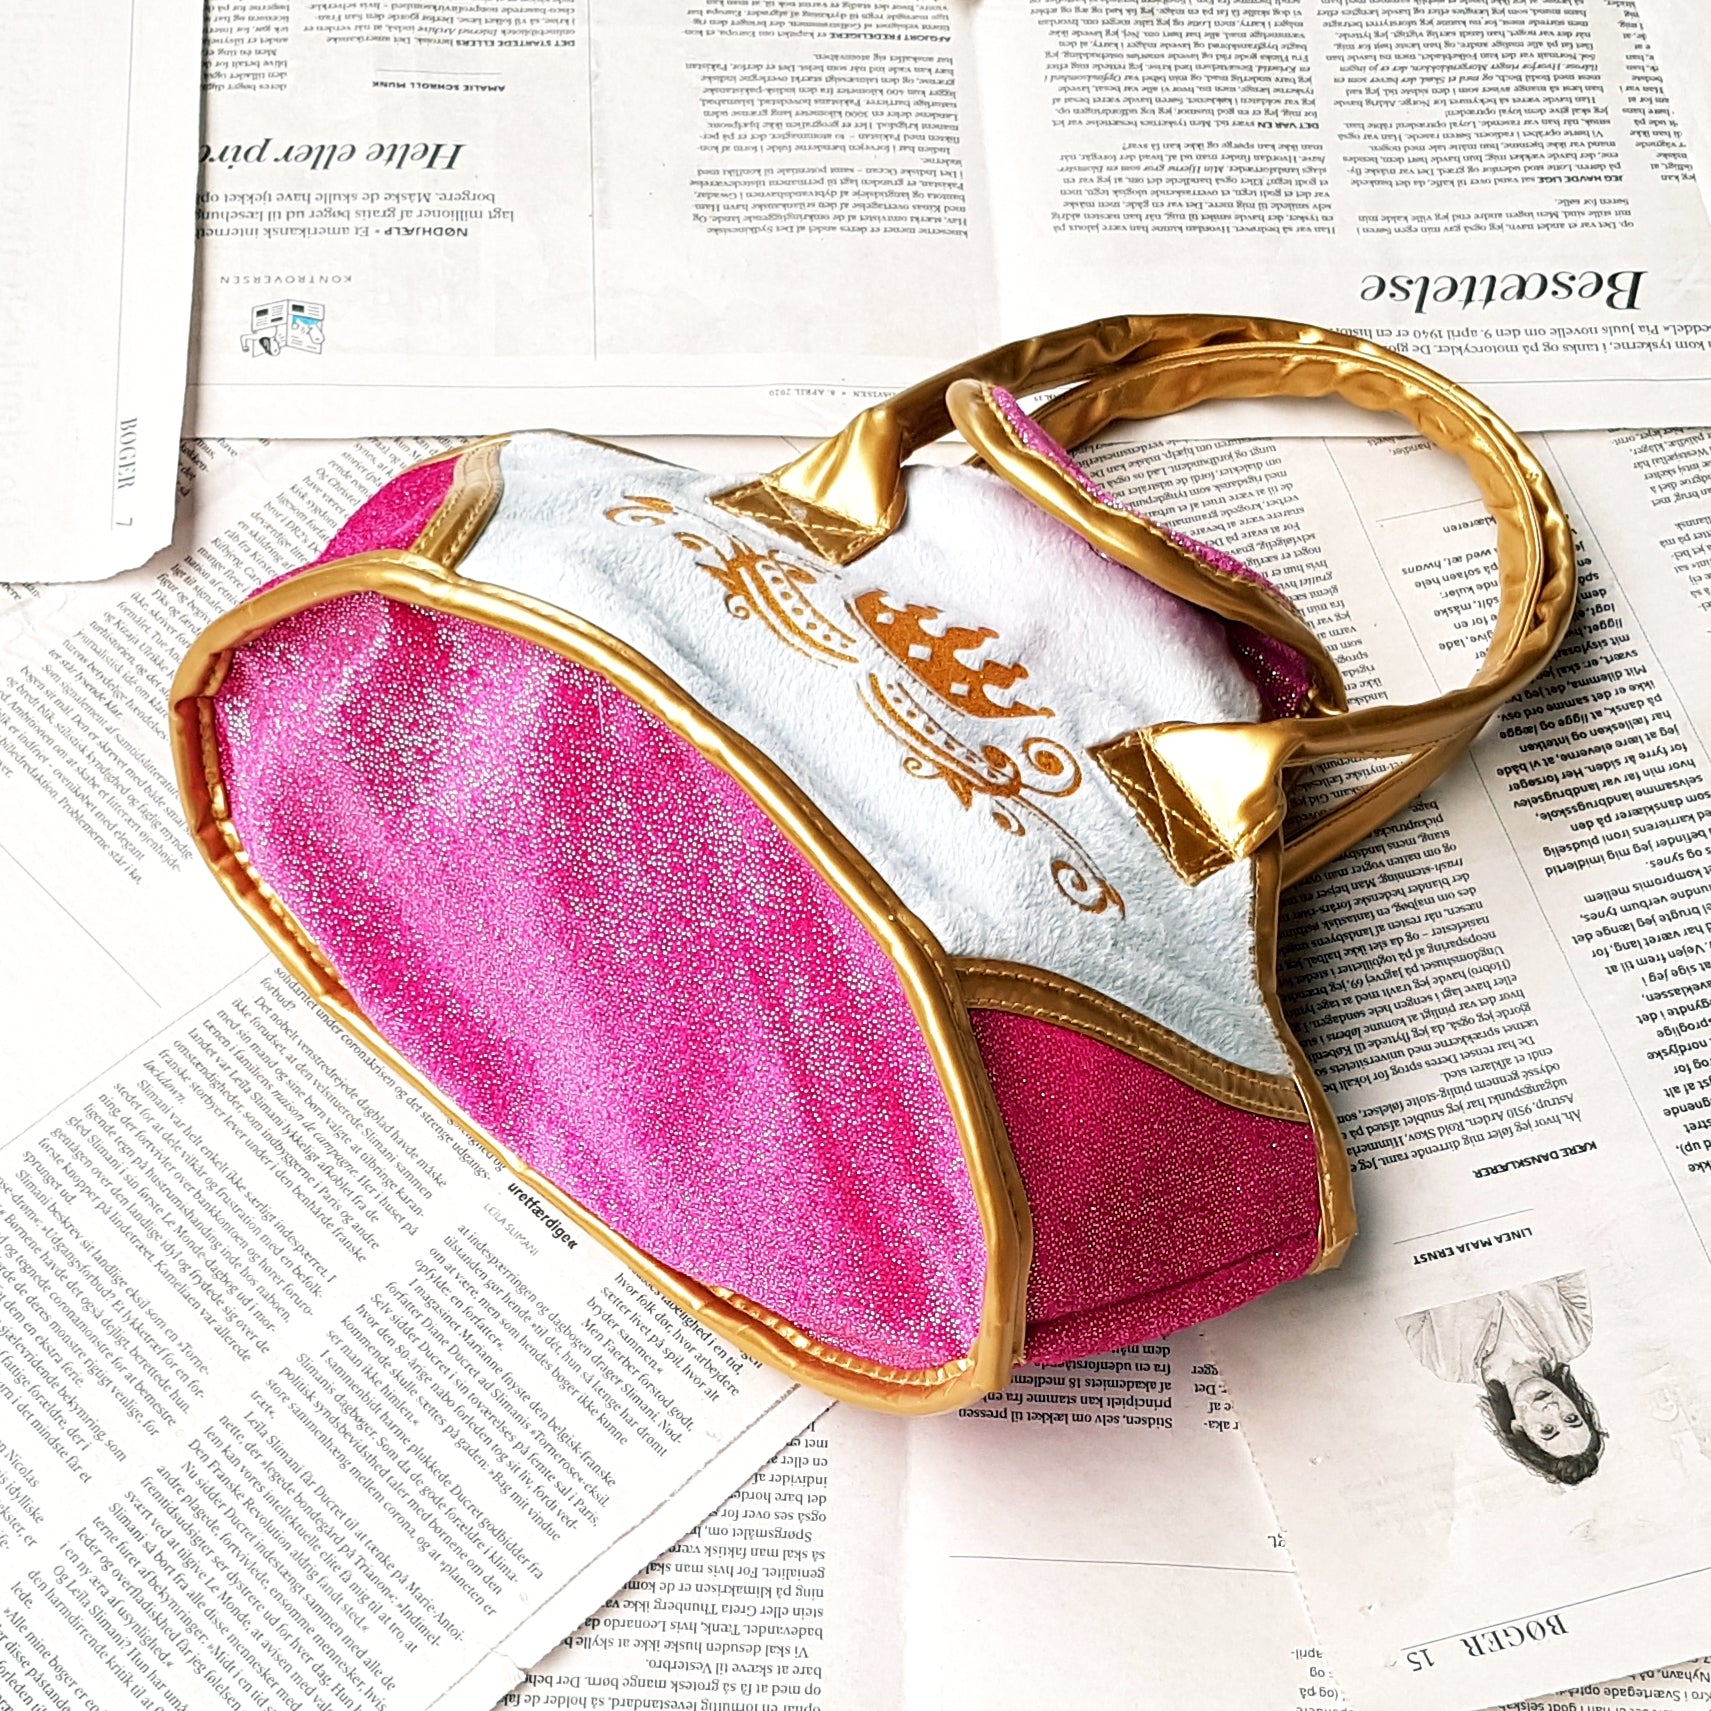 Genbrug - Taske - Prinsesse - Pink/Guld/Lyseblå – Me DK